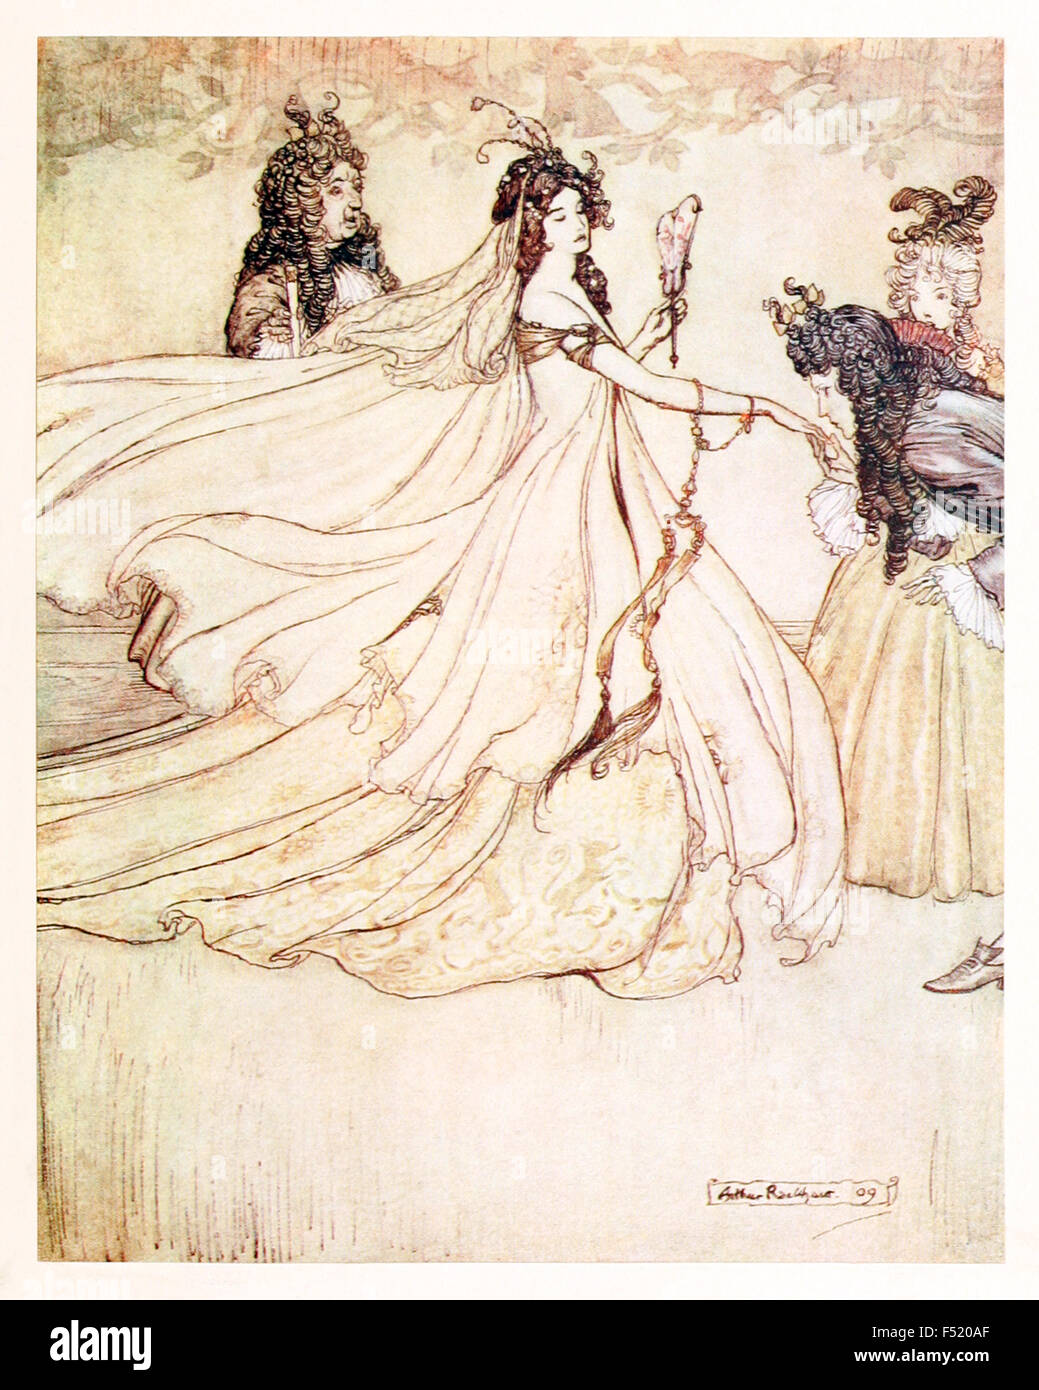 "Ashenputtel passa la palla.' da 'Ashenputtel' (Cinderella) in "Le Fiabe dei Fratelli Grimm', illustrazione di Arthur Rackham (1867-1939). Vedere la descrizione per maggiori informazioni. Foto Stock